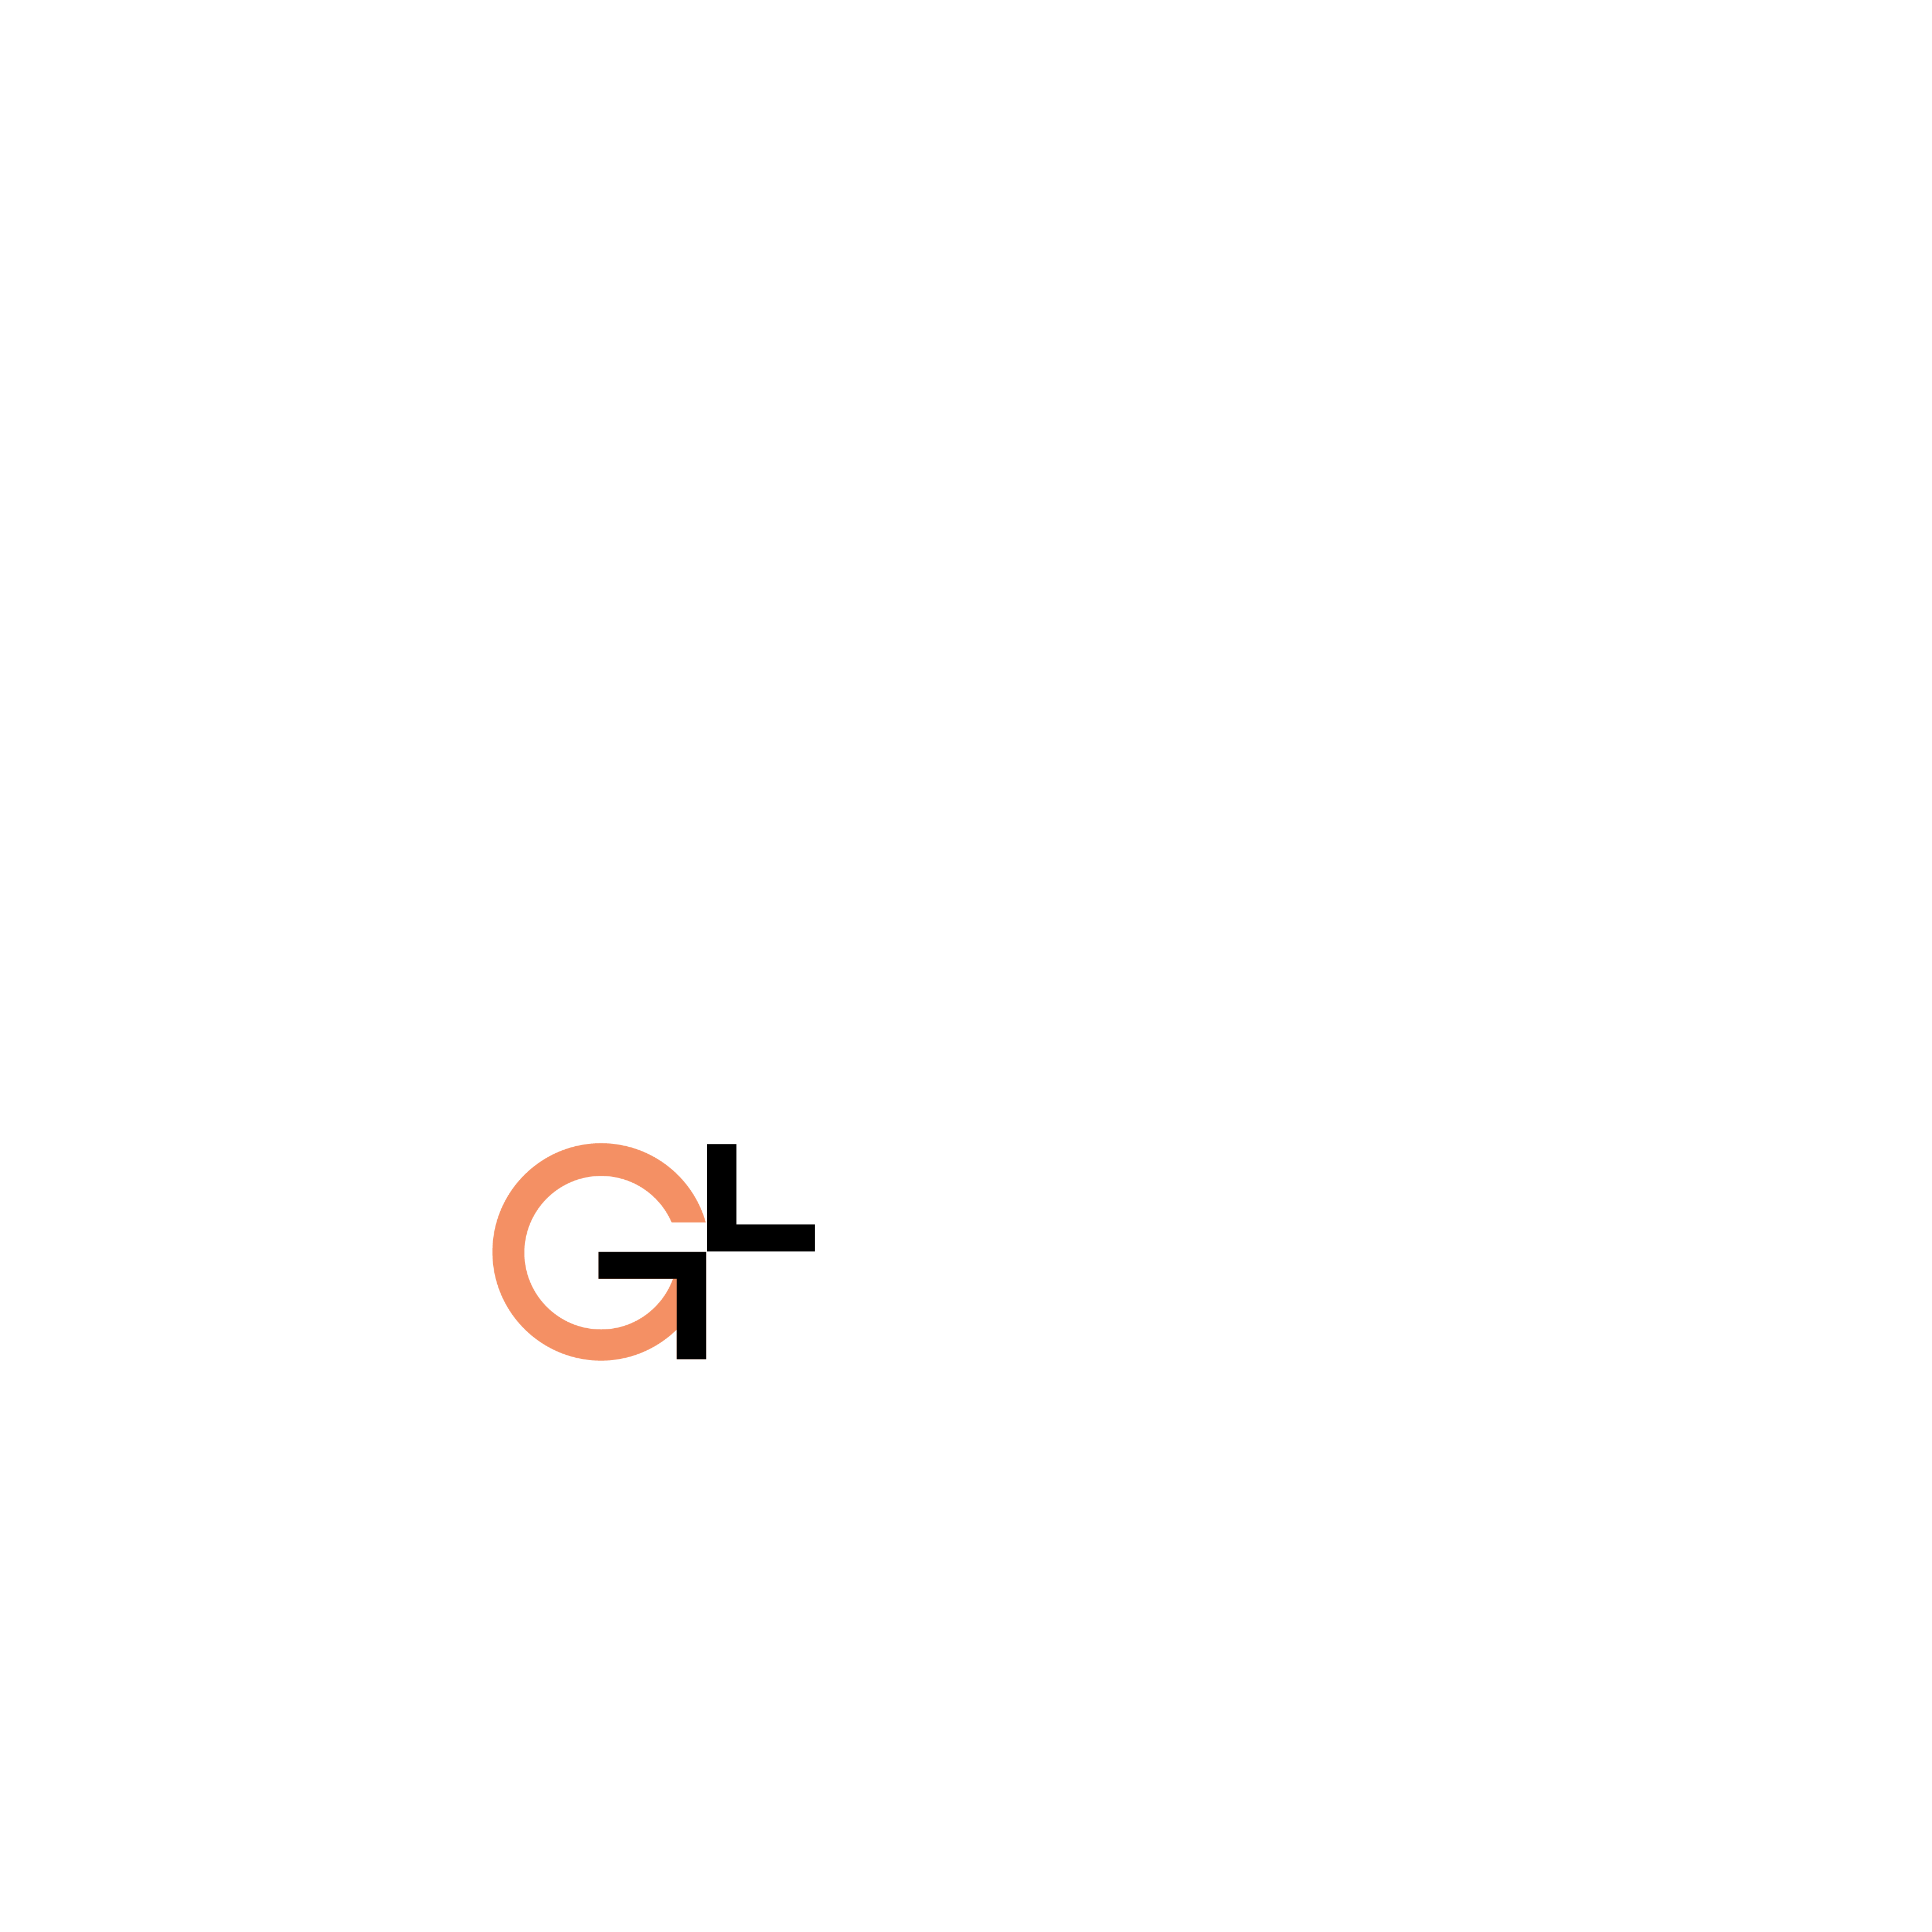 Gl cafe lightlogo logo dark